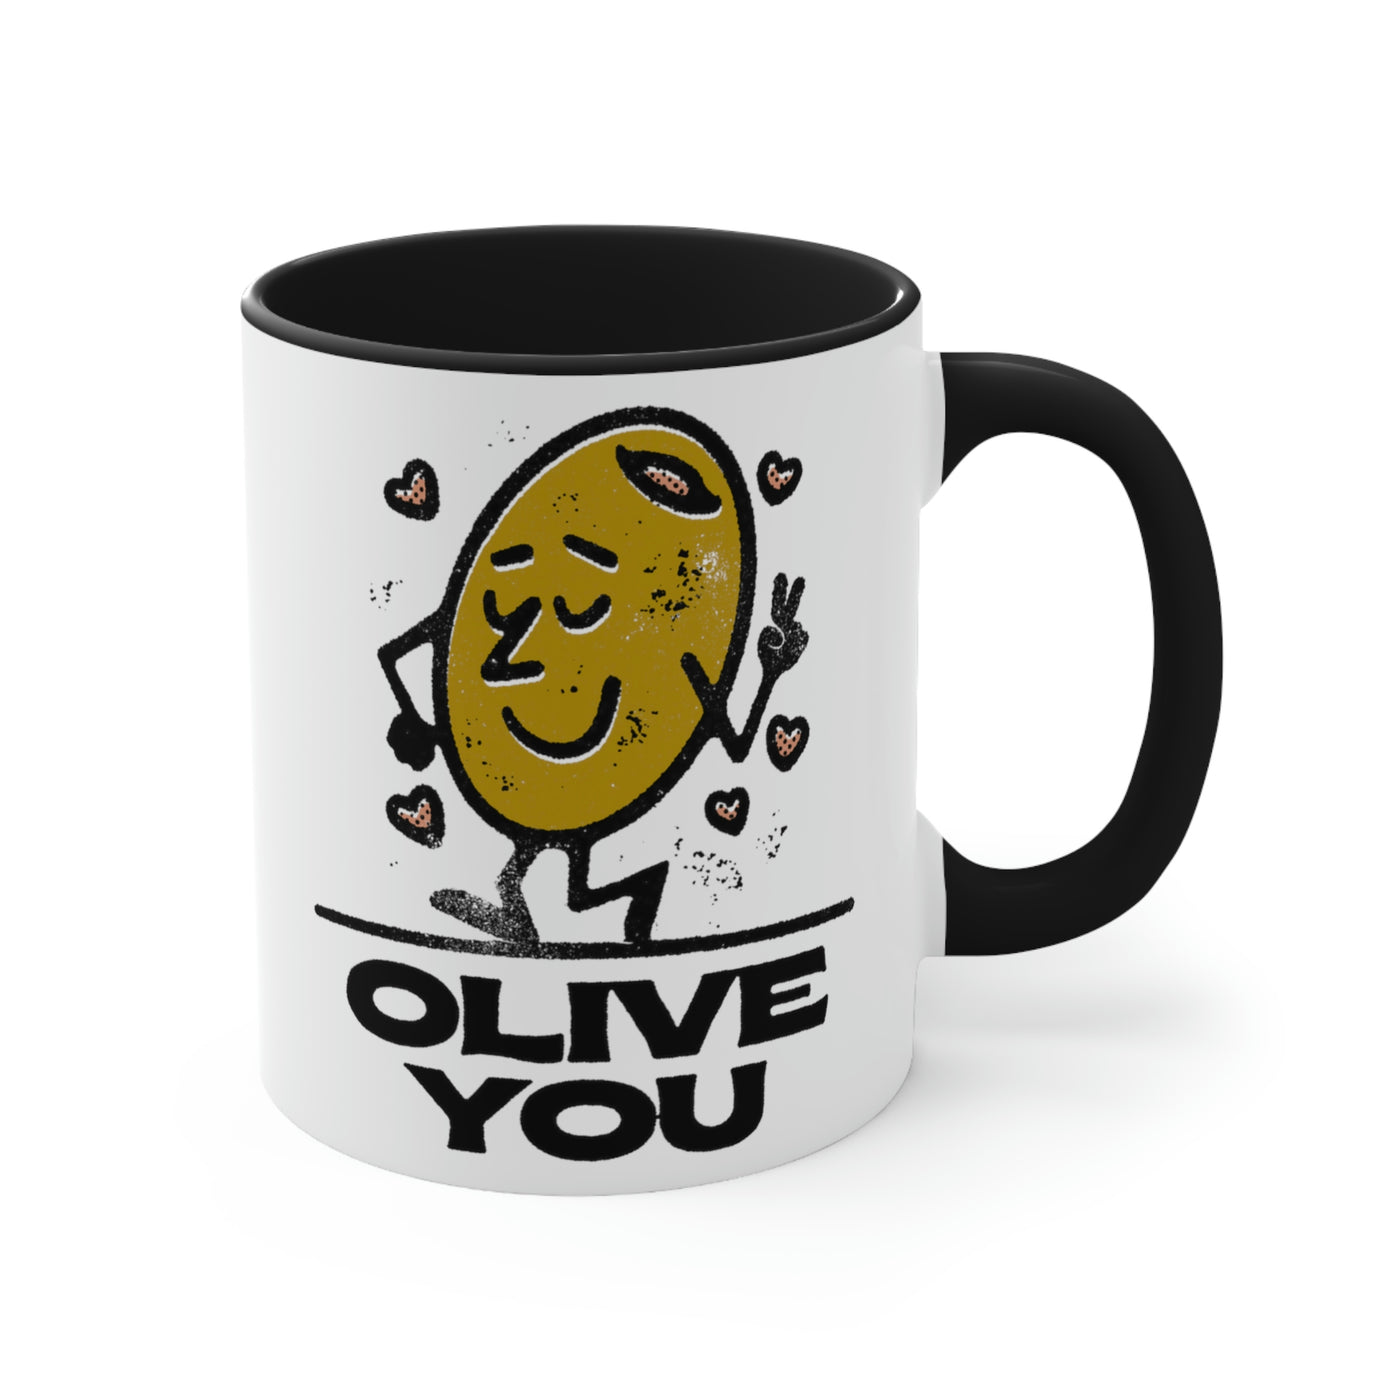 Olive You Funny Retro Ceramic Mug